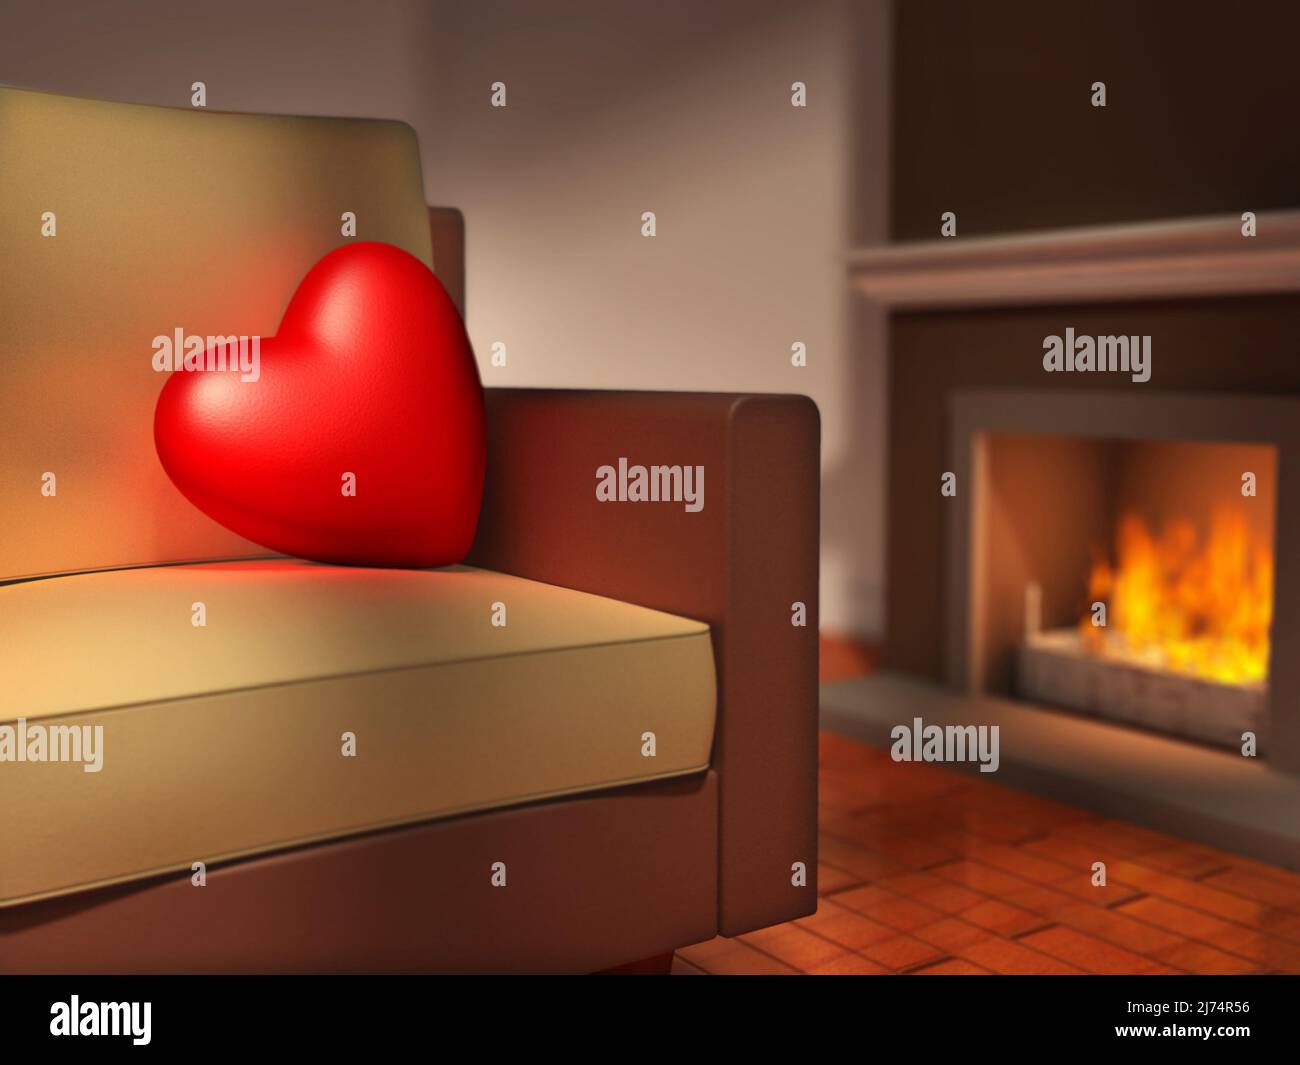 Un gran corazón rojo descansa en un sofá, al lado de una chimenea. Ilustración digital. Foto de stock